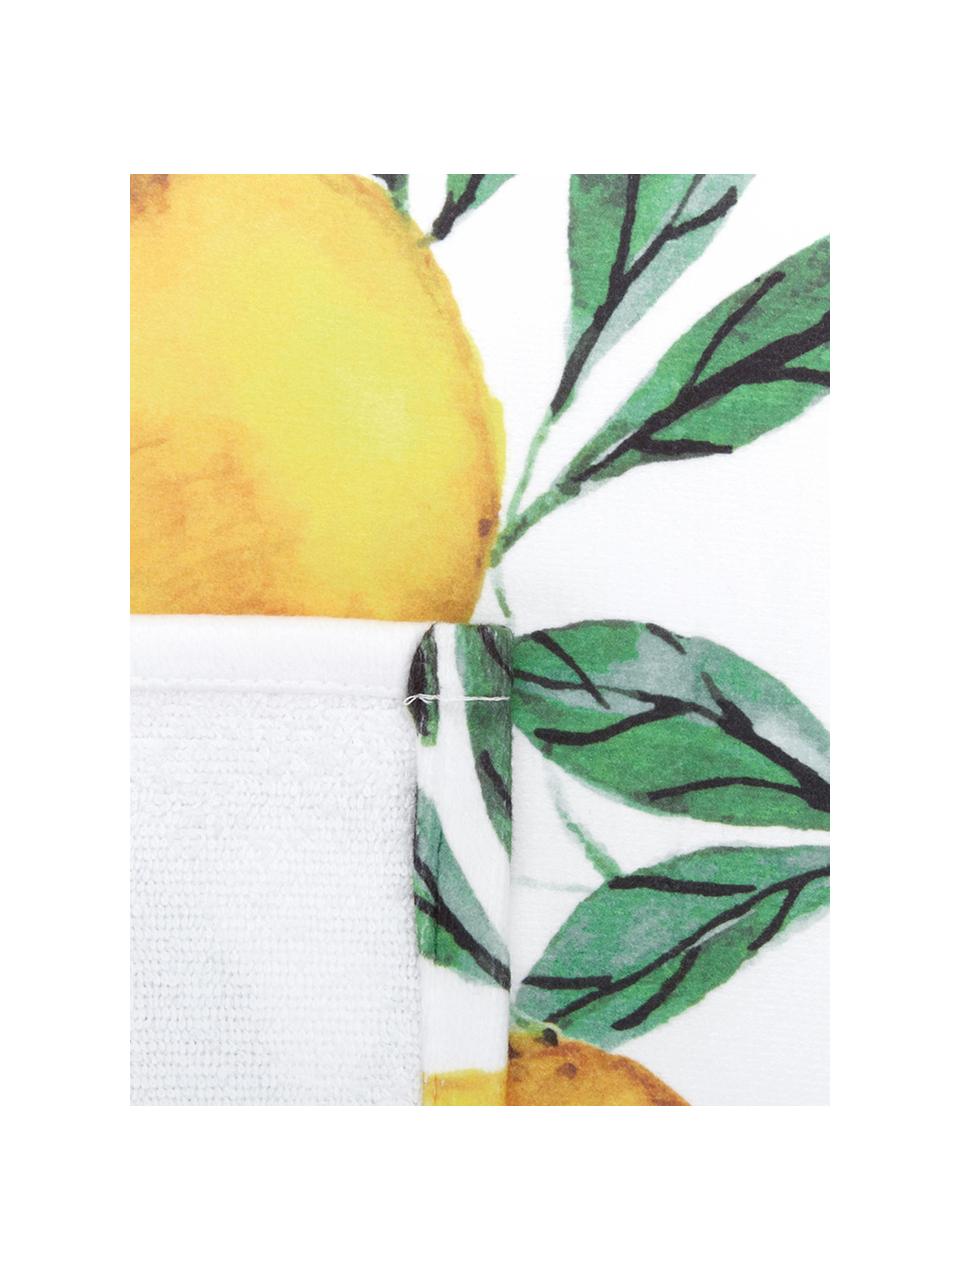 Tenká plážová osuška Lemon, 55 % polyester, 45 % bavlna
Velmi nízká gramáž, 340 g/m², Bílá, zelená, žlutá, Š 70 cm, D 150 cm